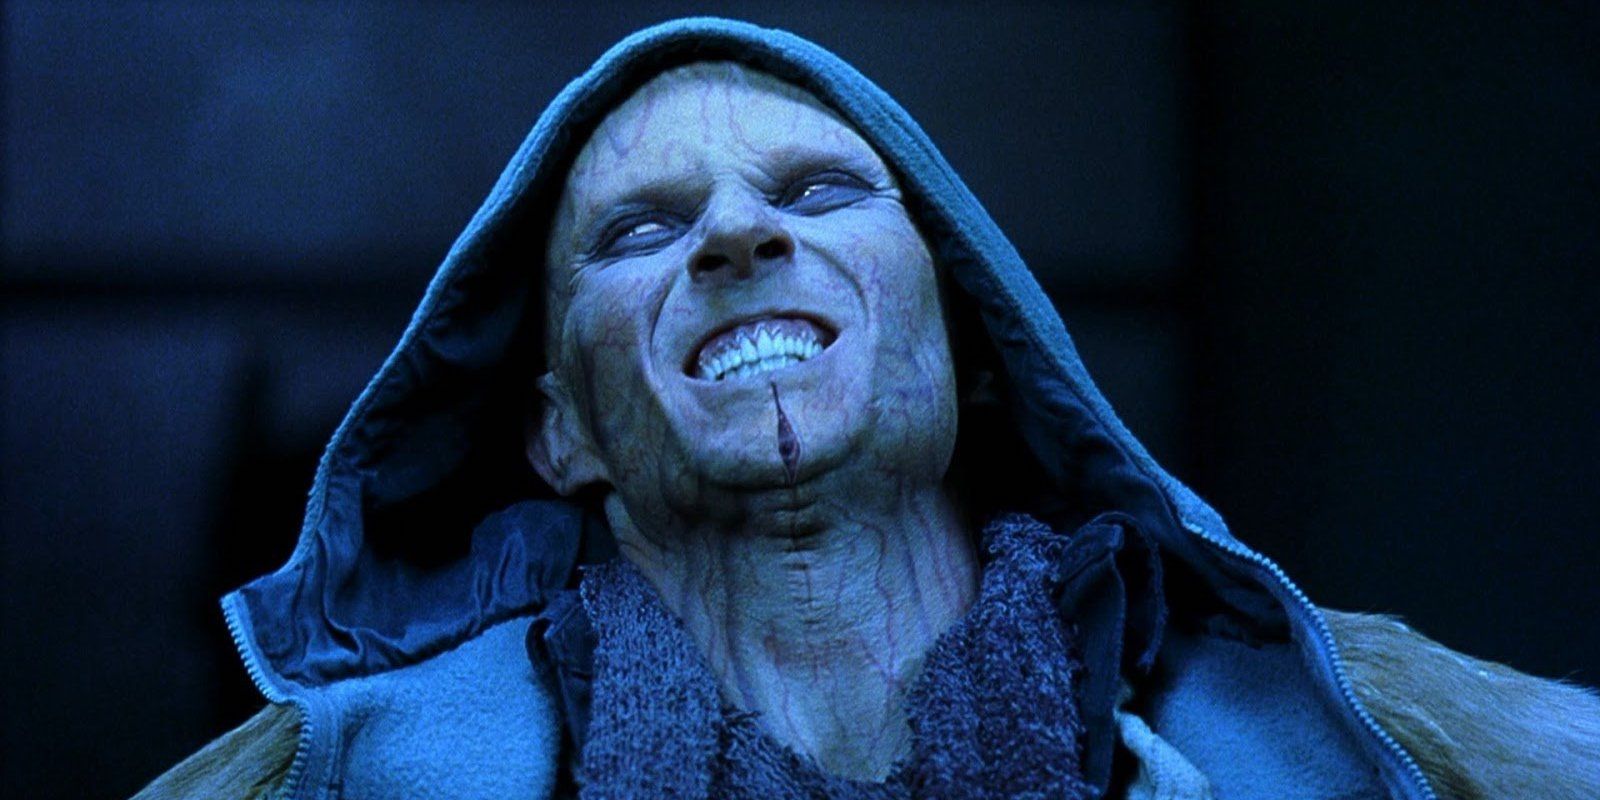 Guillermo Del Toro's altered vampires in Blade 2.